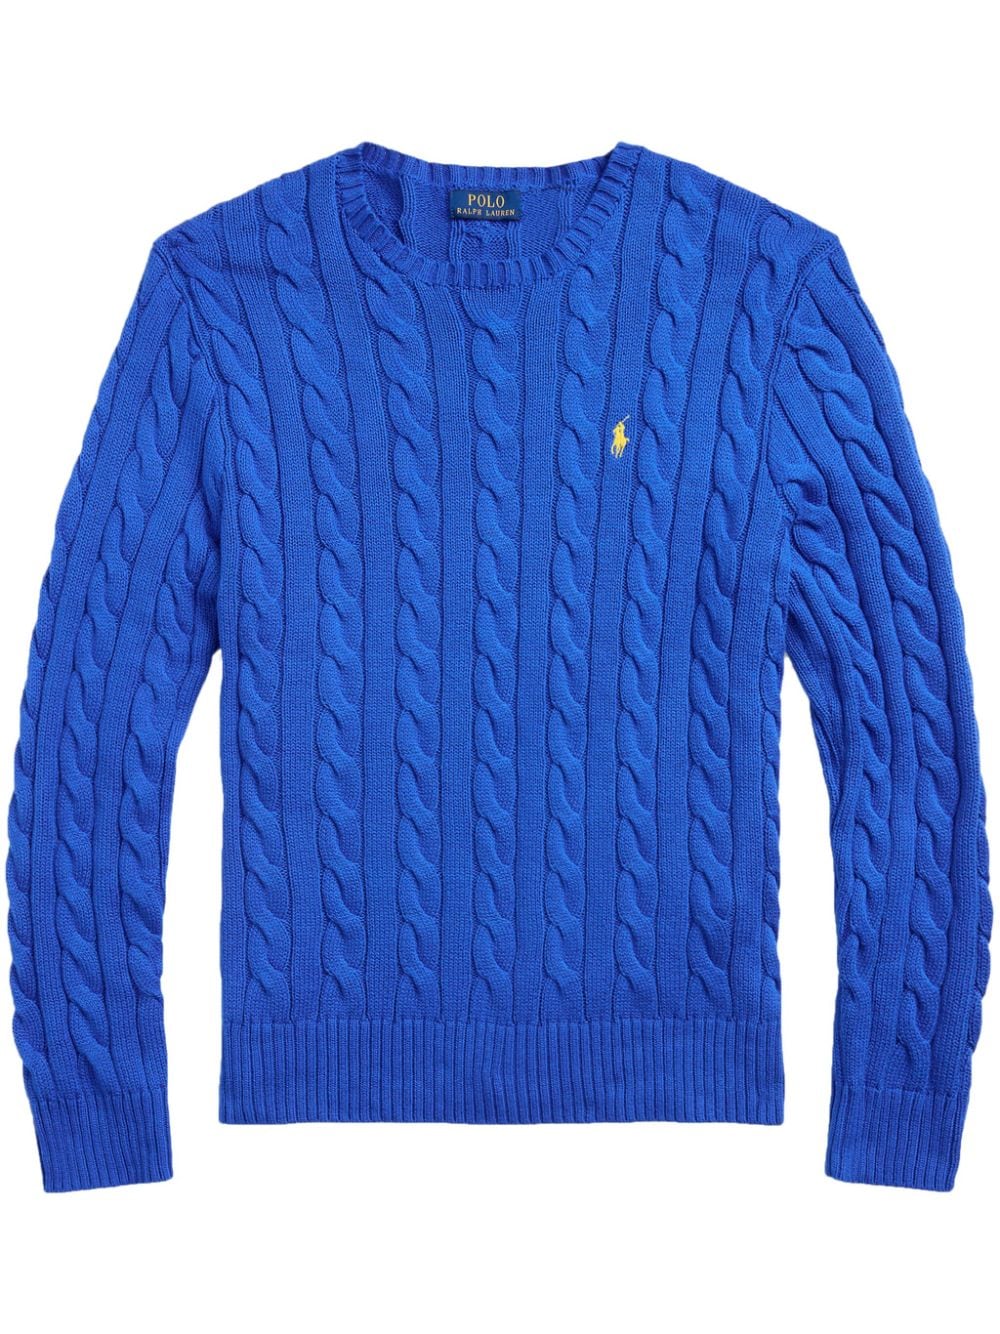 Polo Ralph Lauren Polo Pony cable-knit jumper - Blue von Polo Ralph Lauren